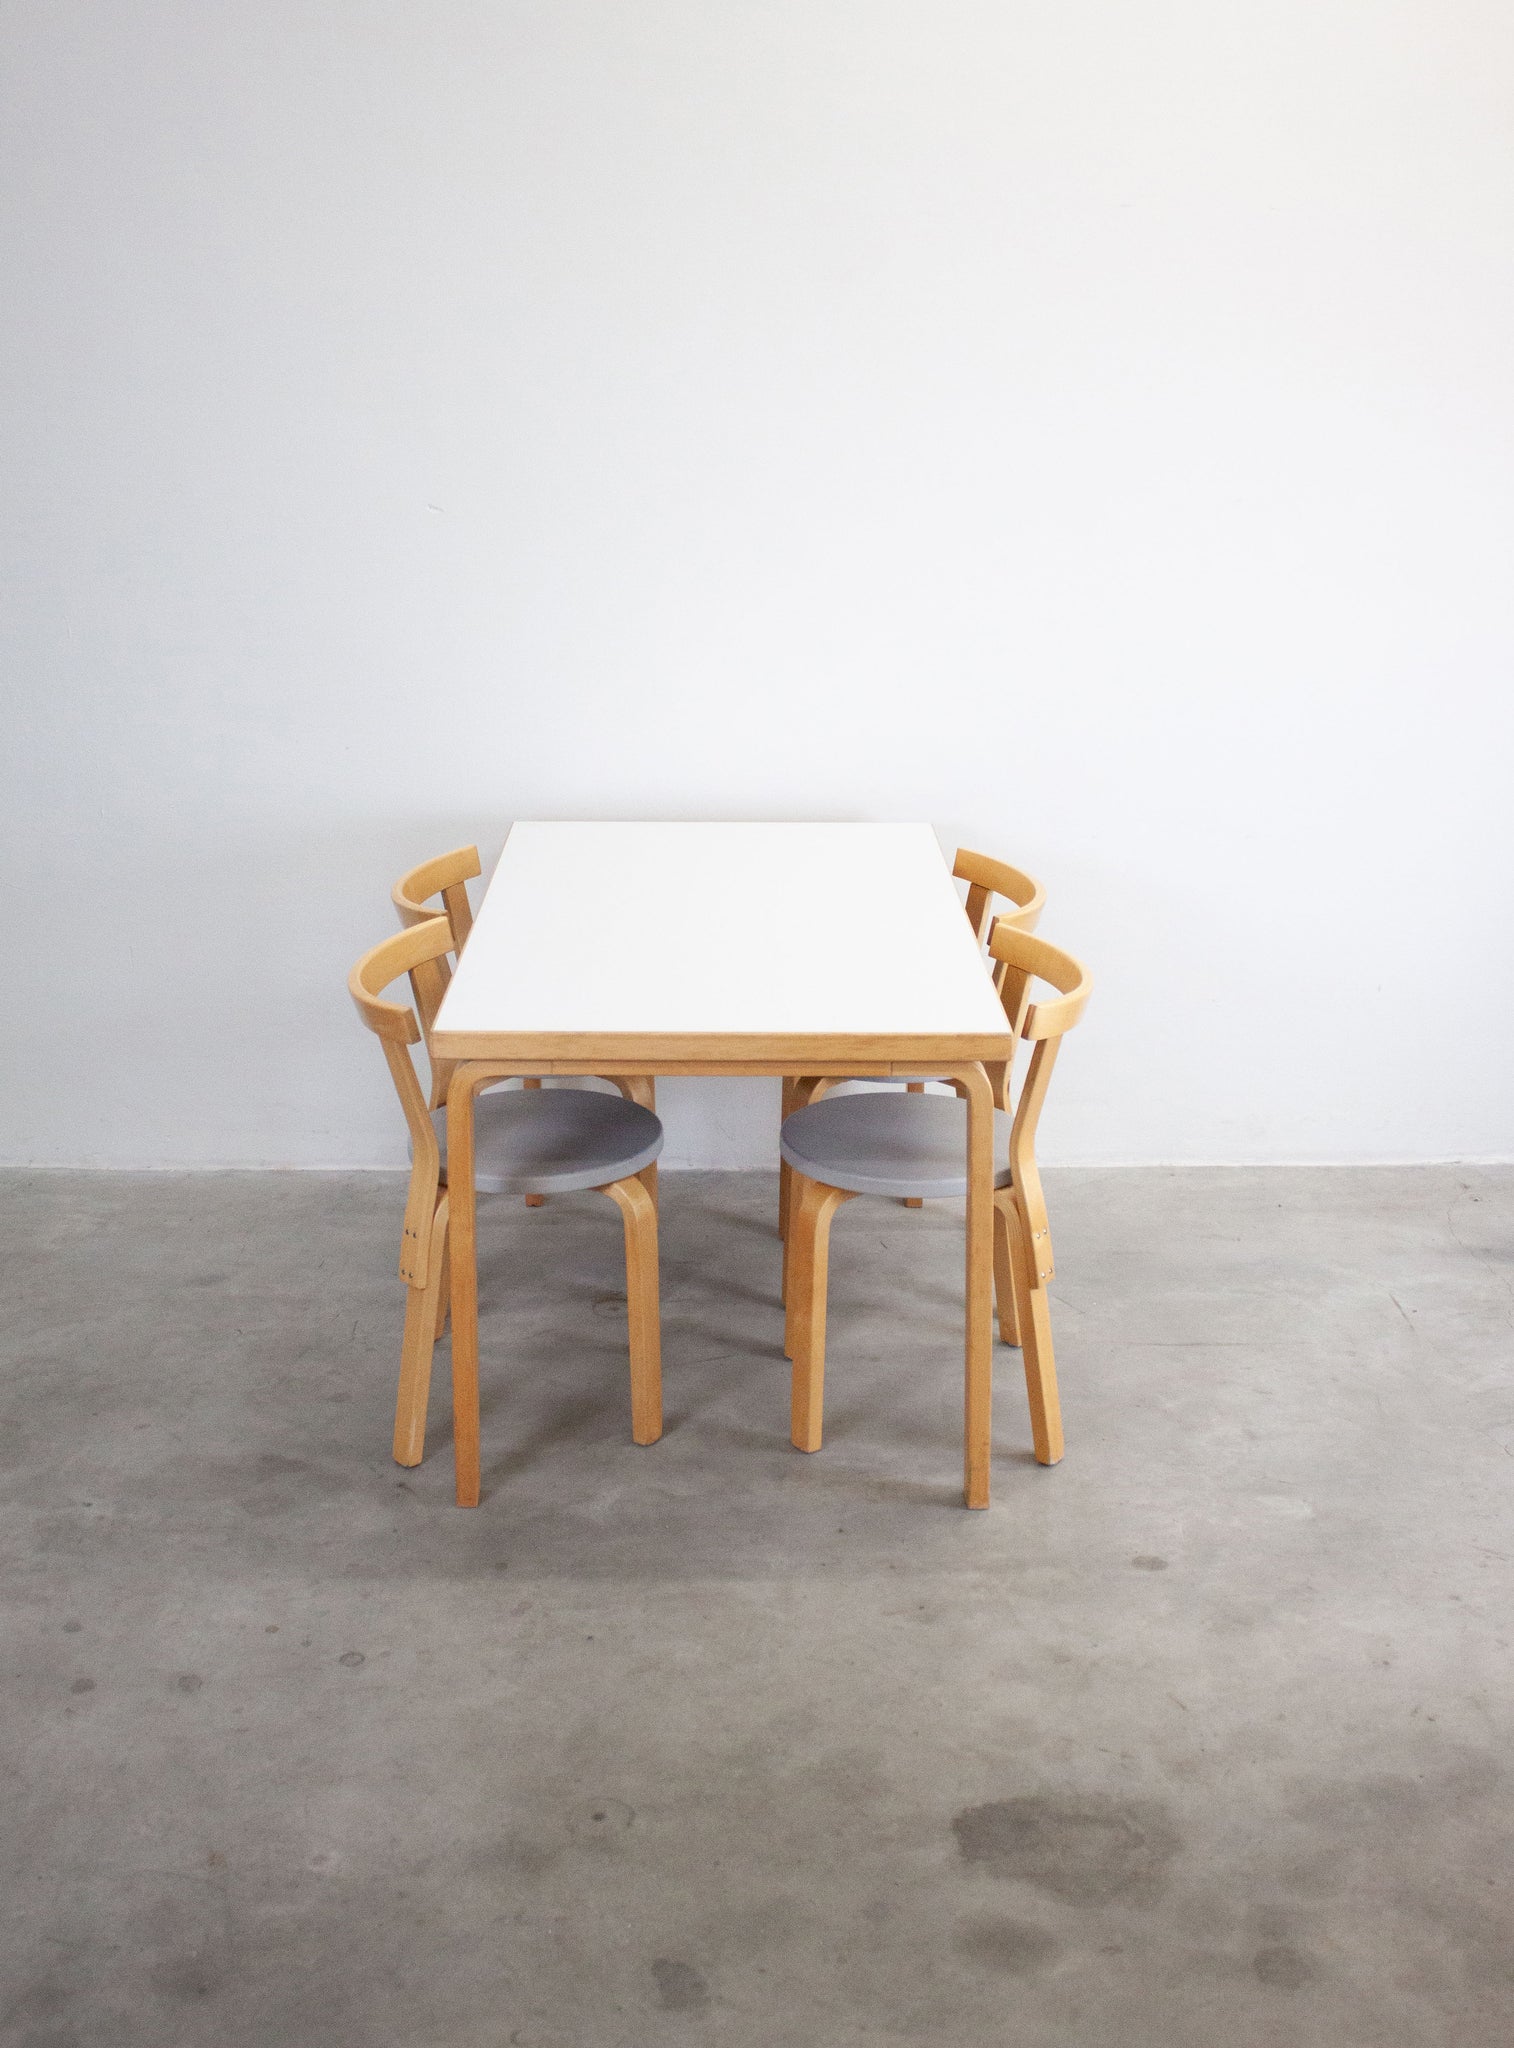 Artek Model 81B Dining Table by Alvar Aalto (White)